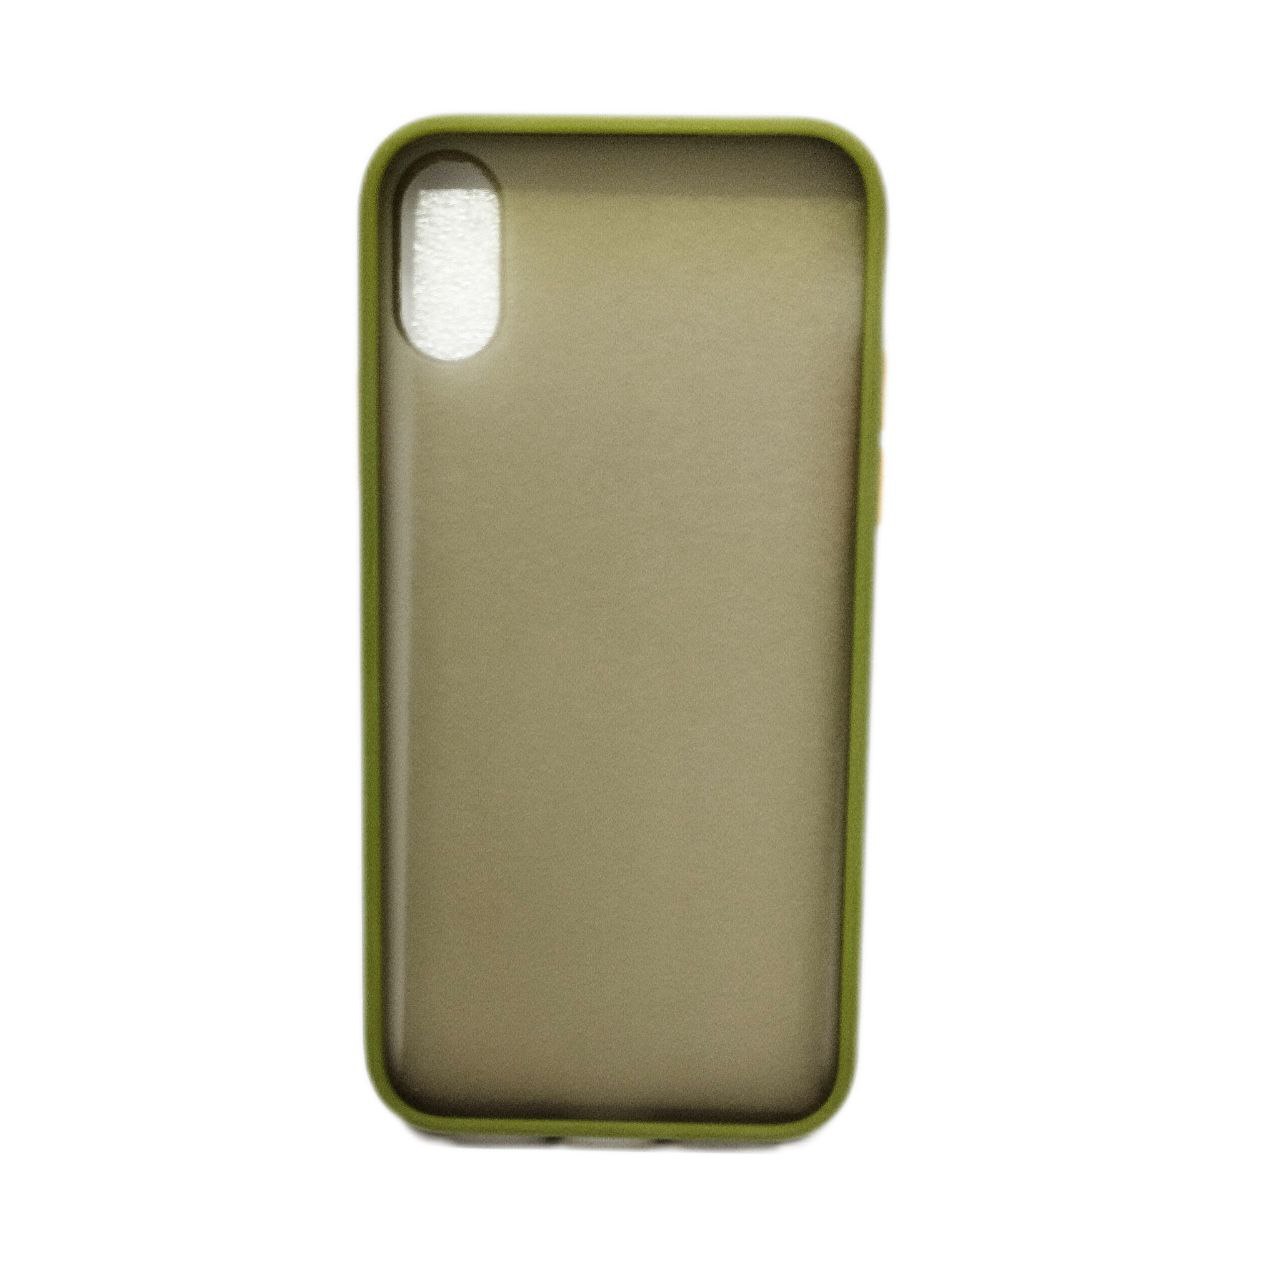 نکته خرید - قیمت روز کاور  مدل Cell مناسب برای گوشی موبایل اپل iPhone X/XS خرید